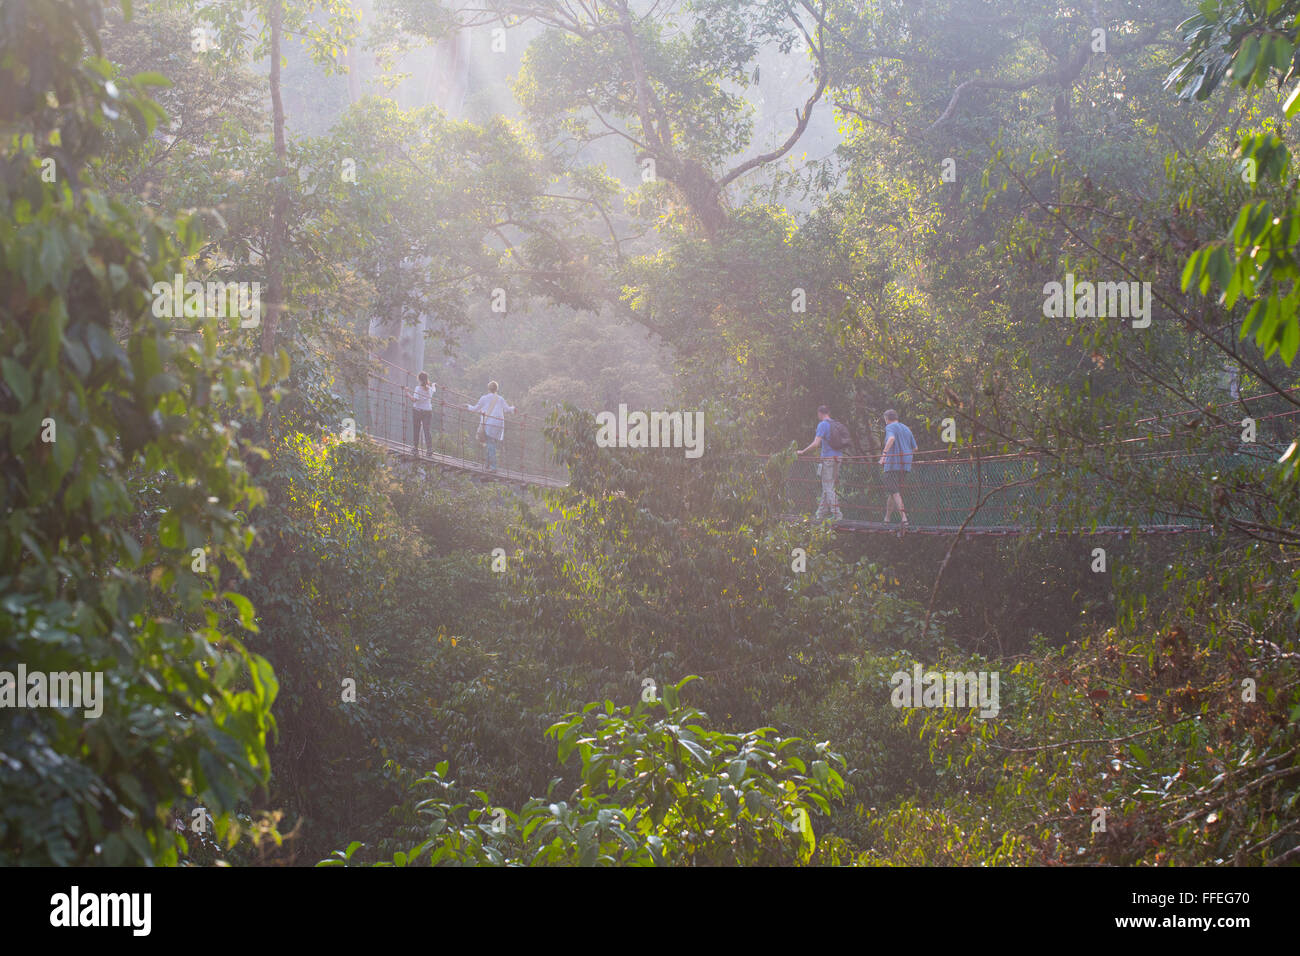 Touristen auf einem überdachunggehweg im Danum Valley, Sabah, Malaysia Stockfoto